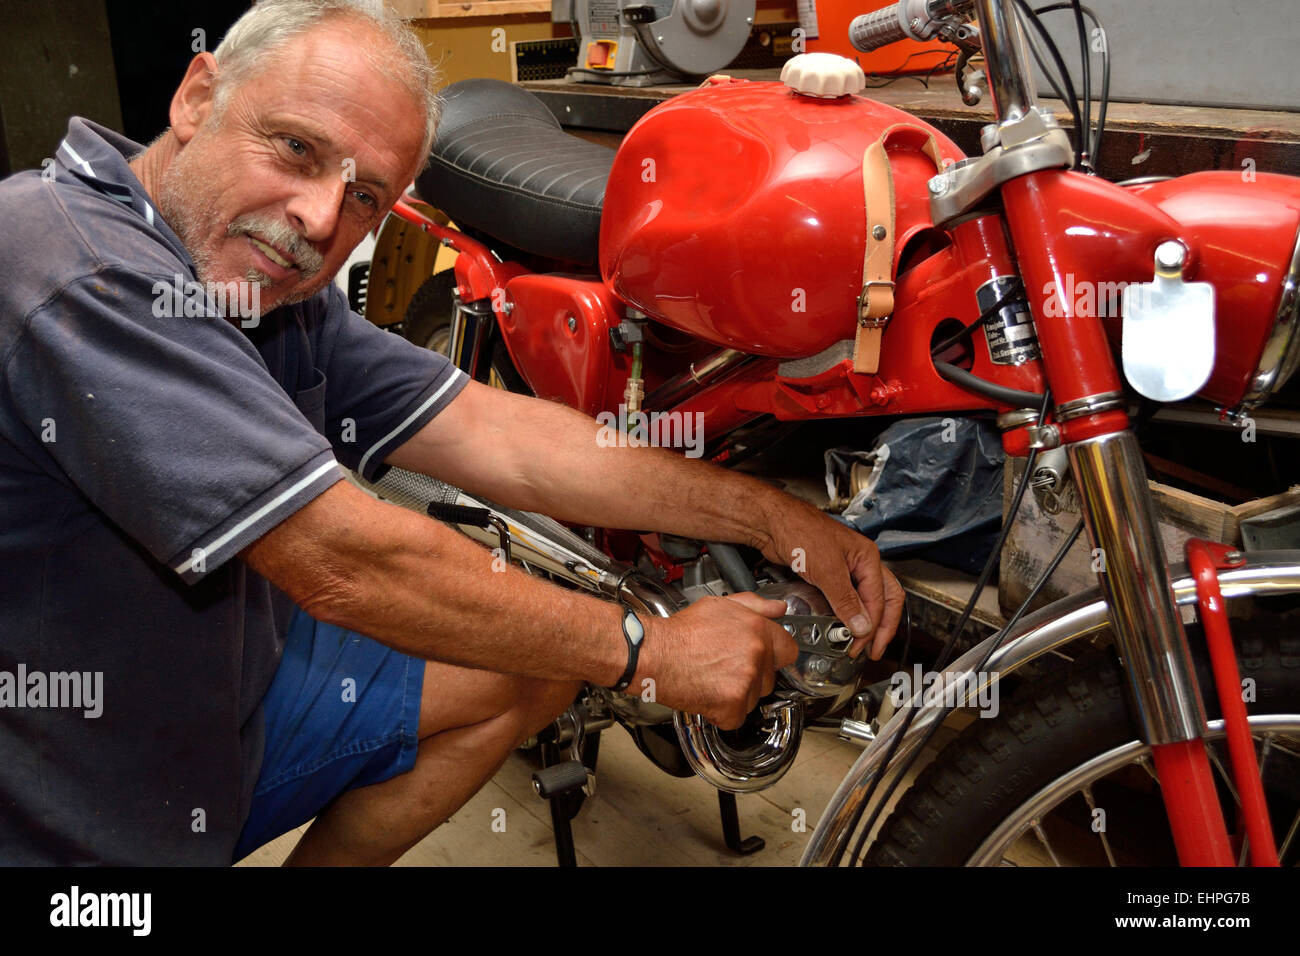 Mechanic repairs moped Stock Photo